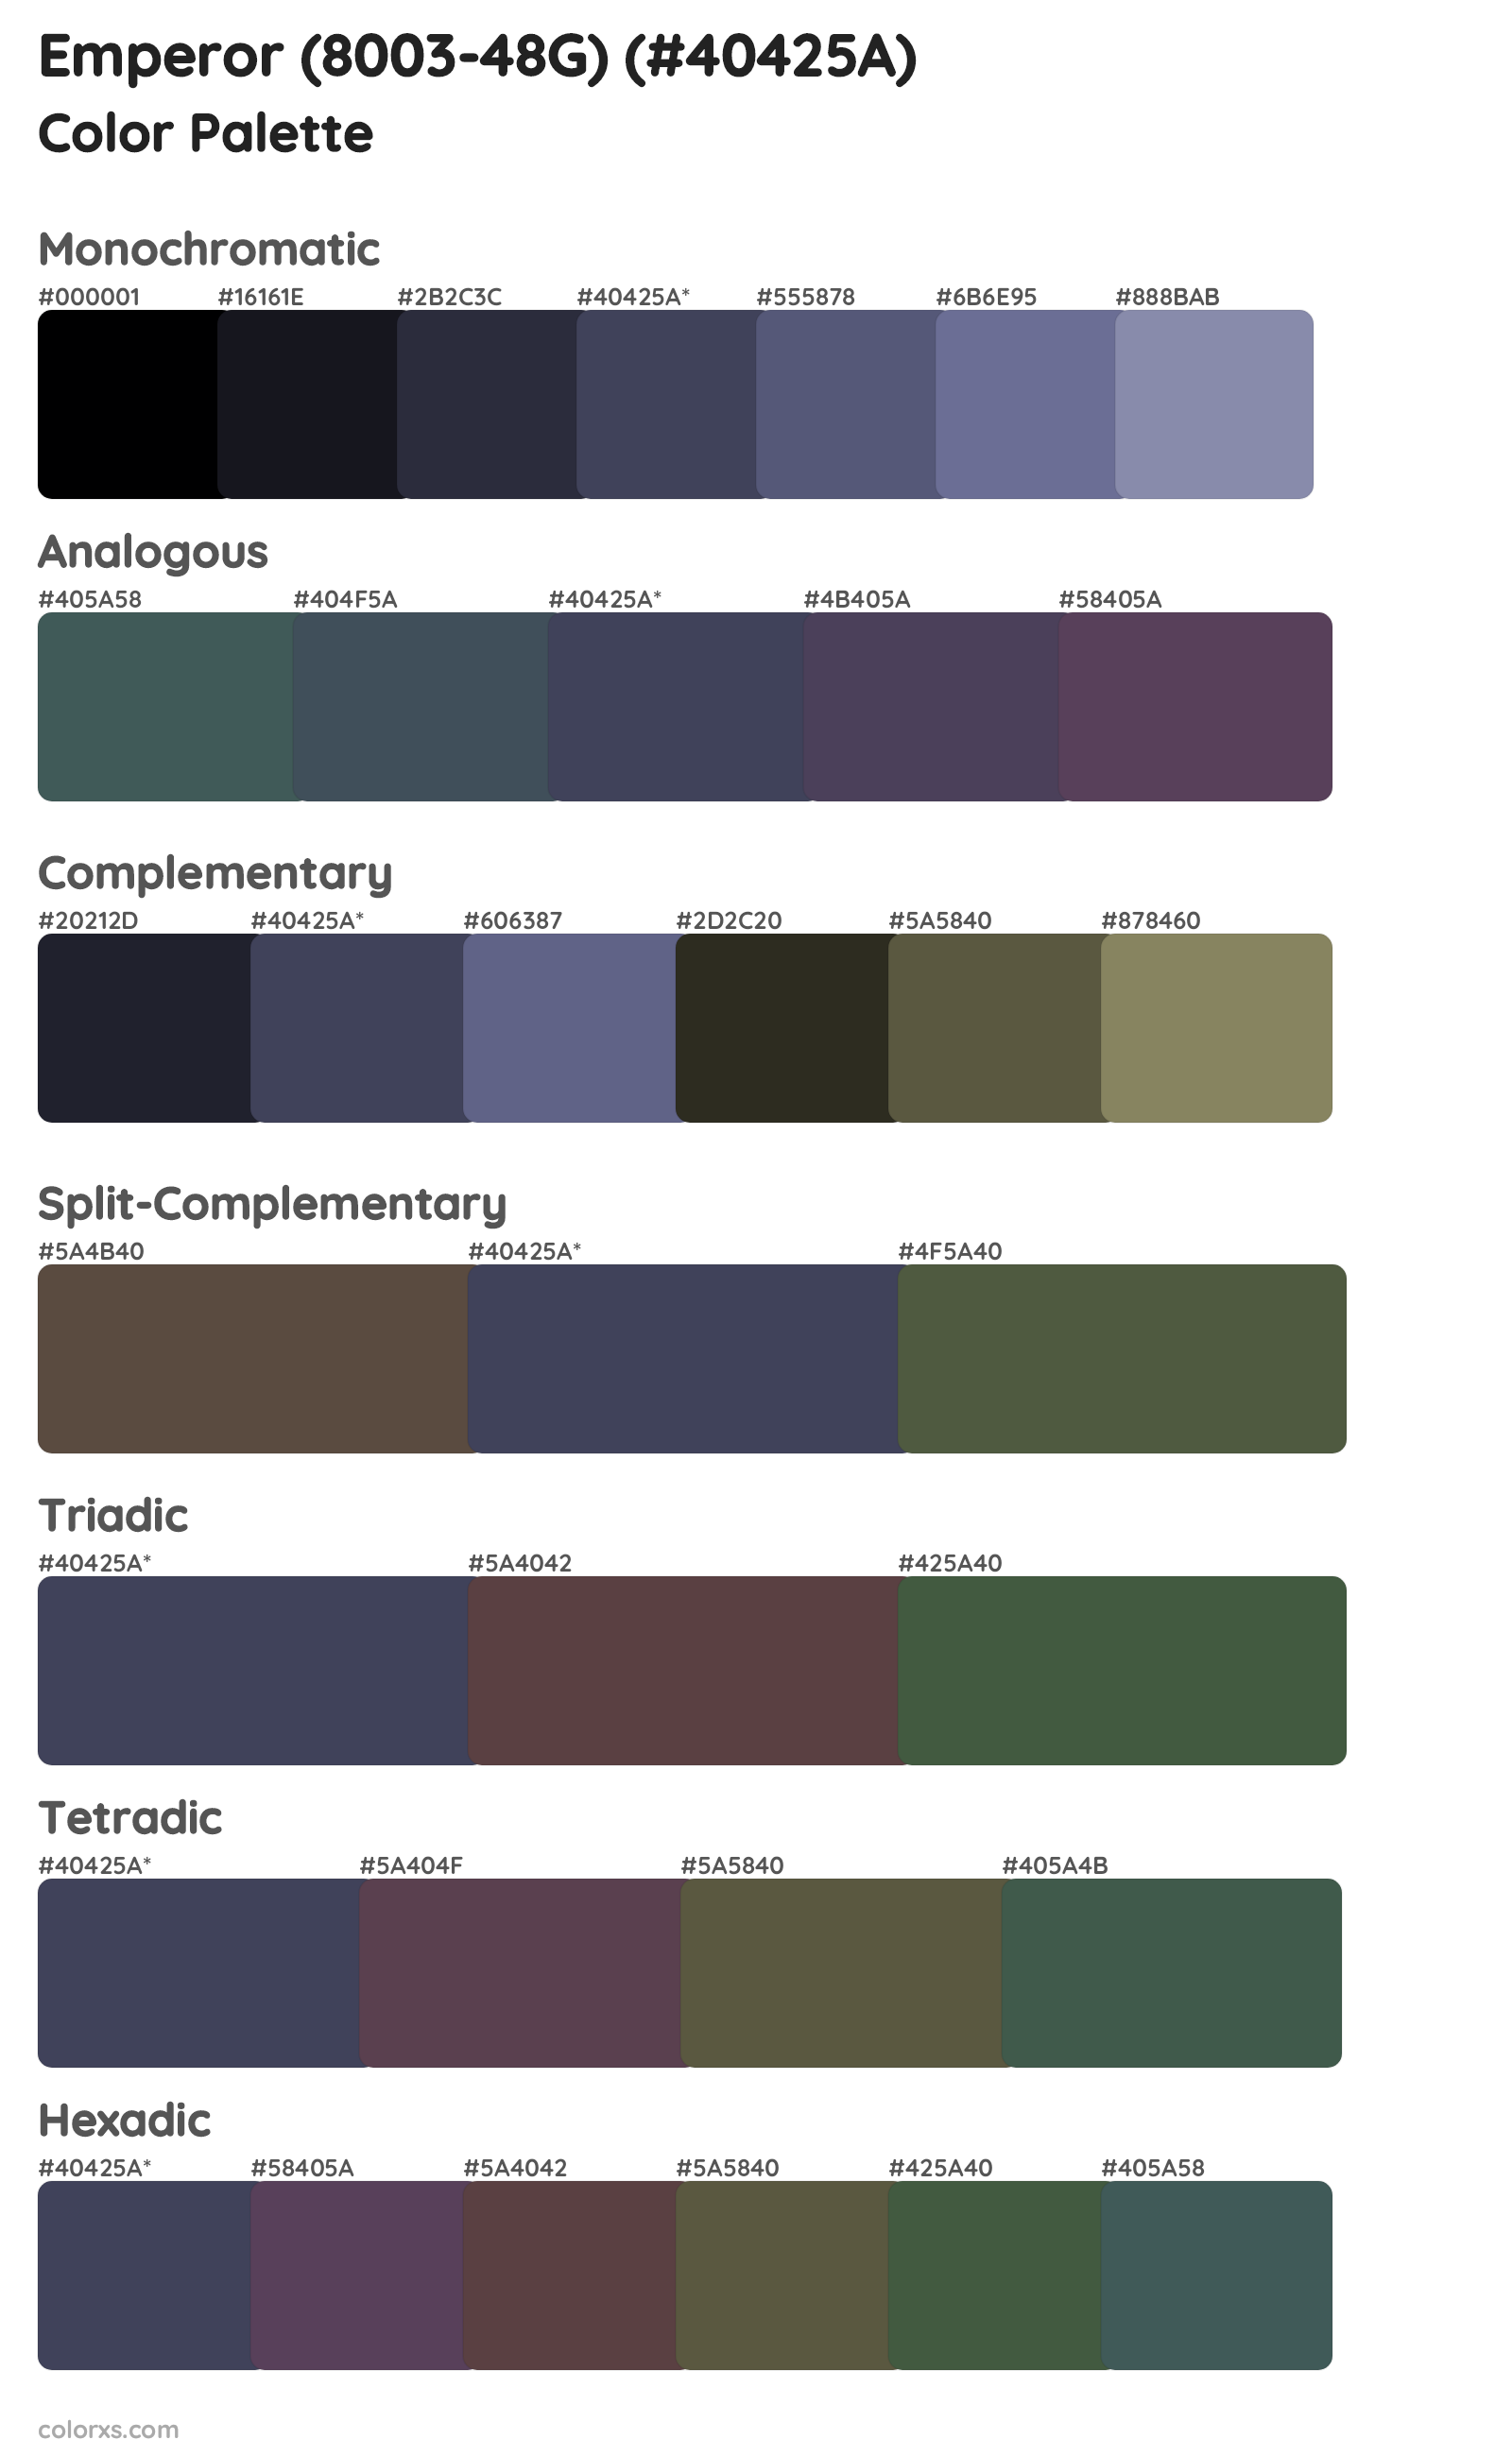 Emperor (8003-48G) Color Scheme Palettes